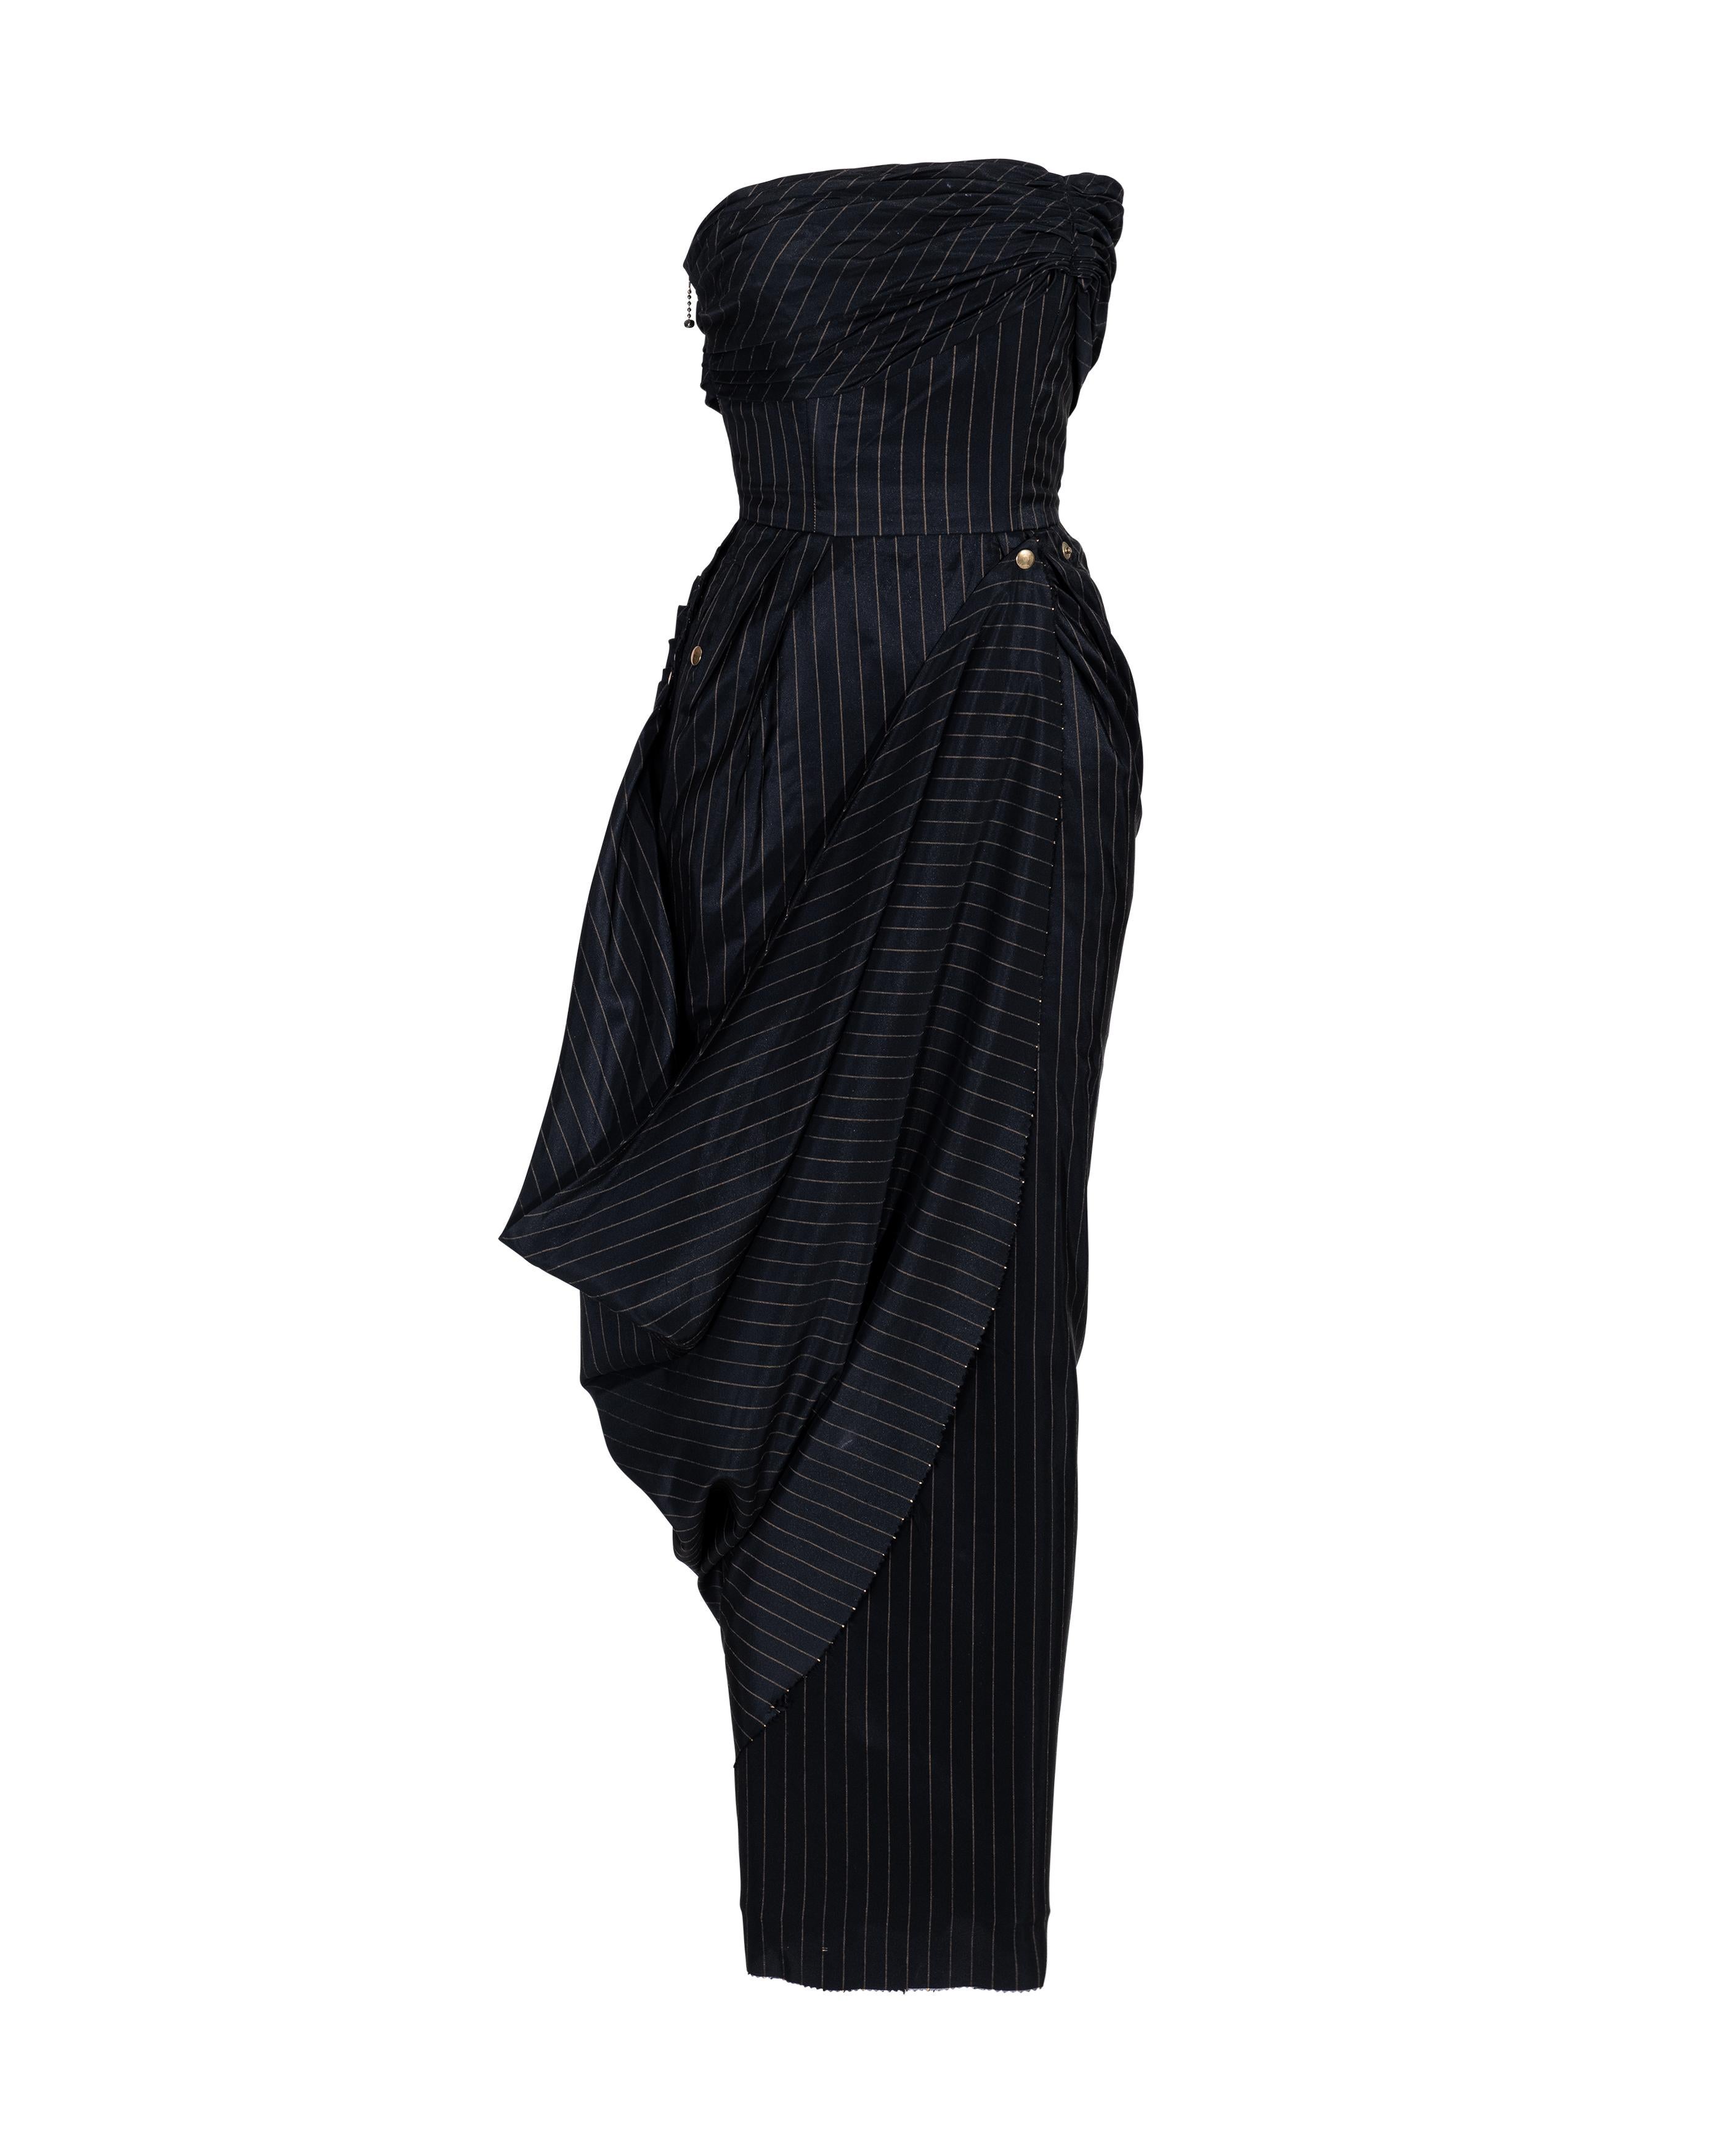 S/S 1995 Jean Paul Gaultier Pinstripe Strapless Bustle Gown 5